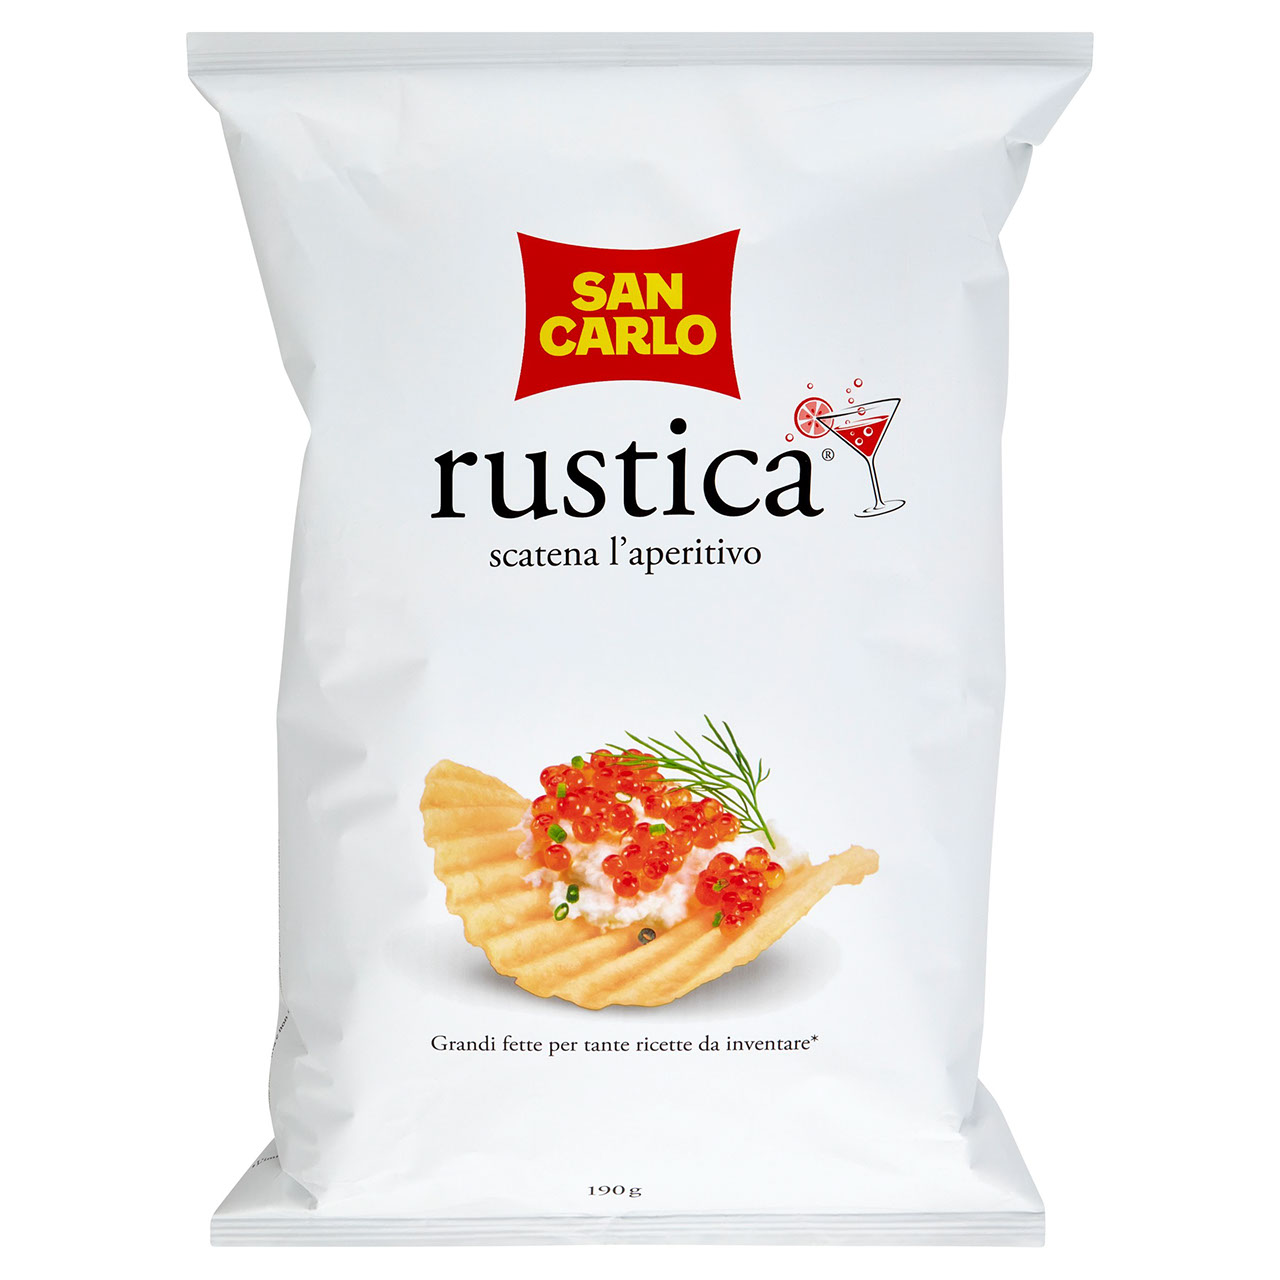 San Carlo rustica 190 g in vendita online